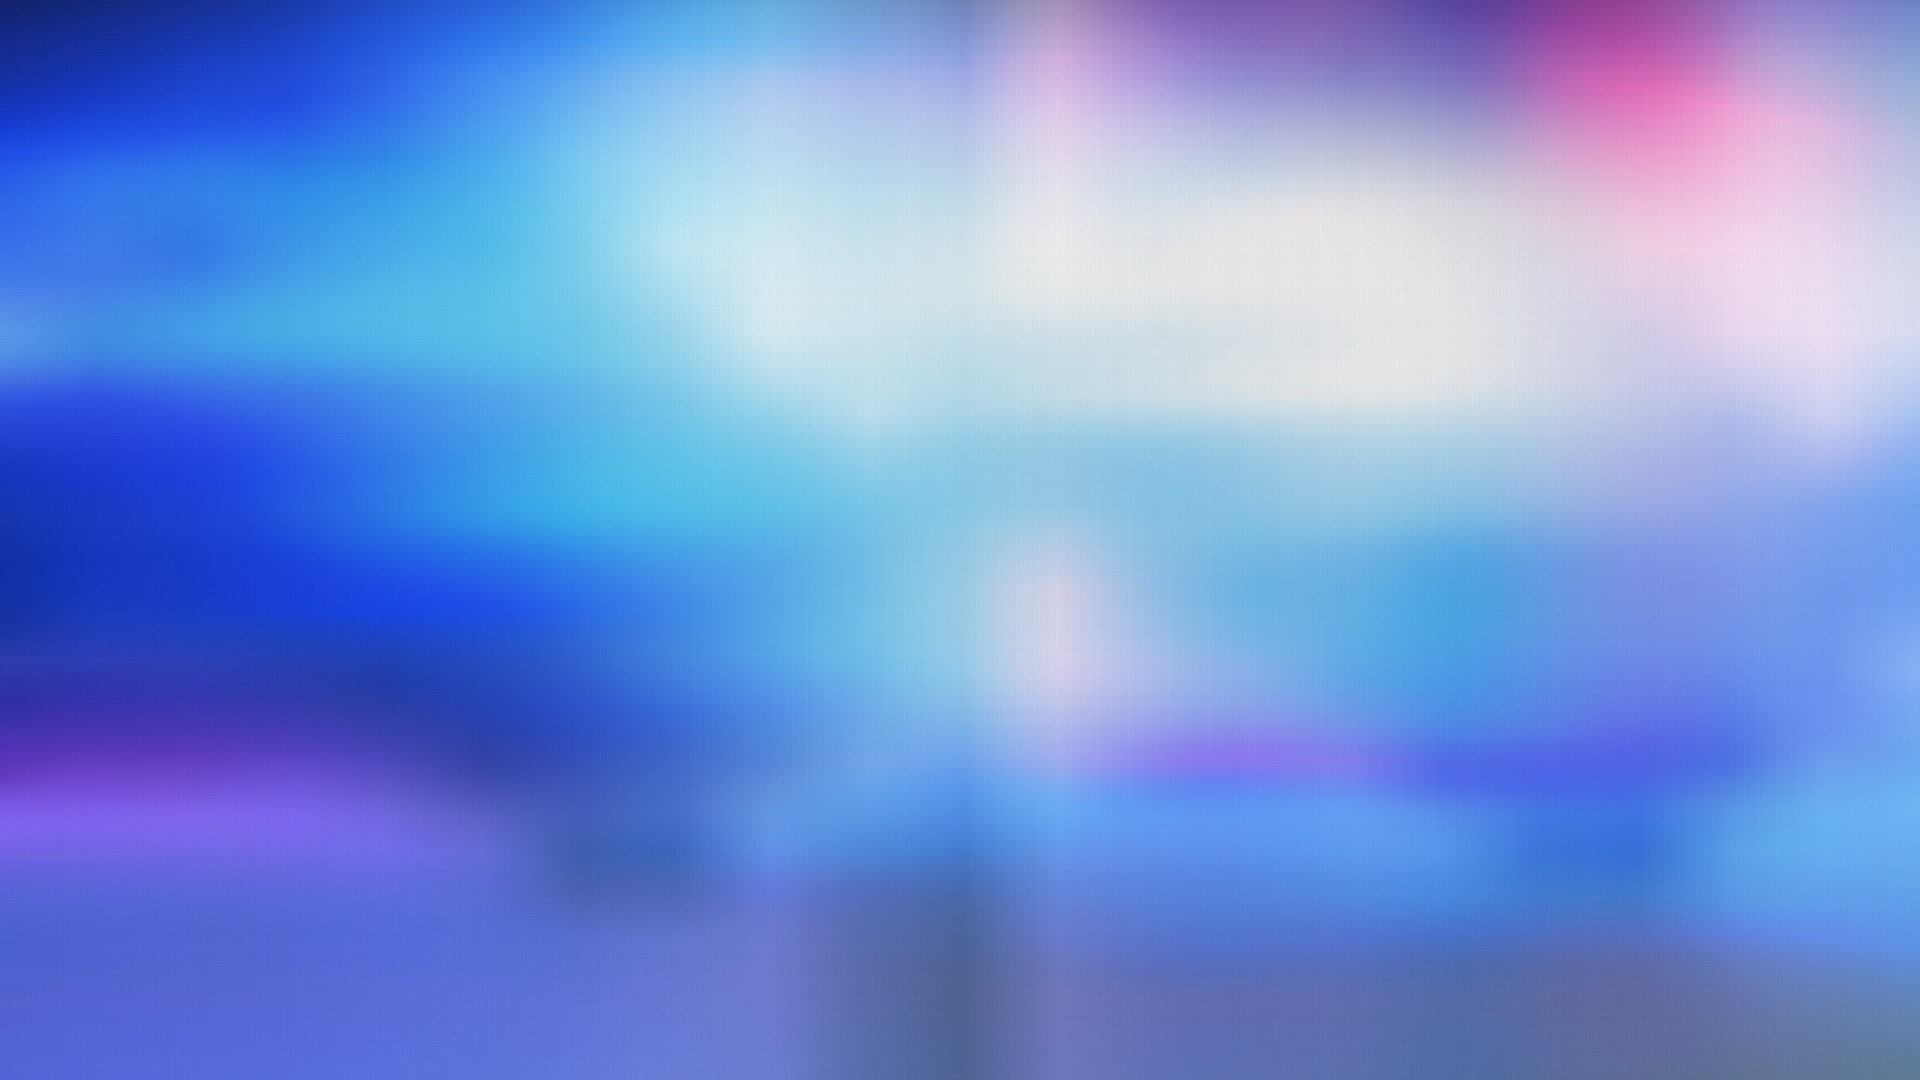  Blur  HD  Wallpaper  Background Image 1920x1080  ID 